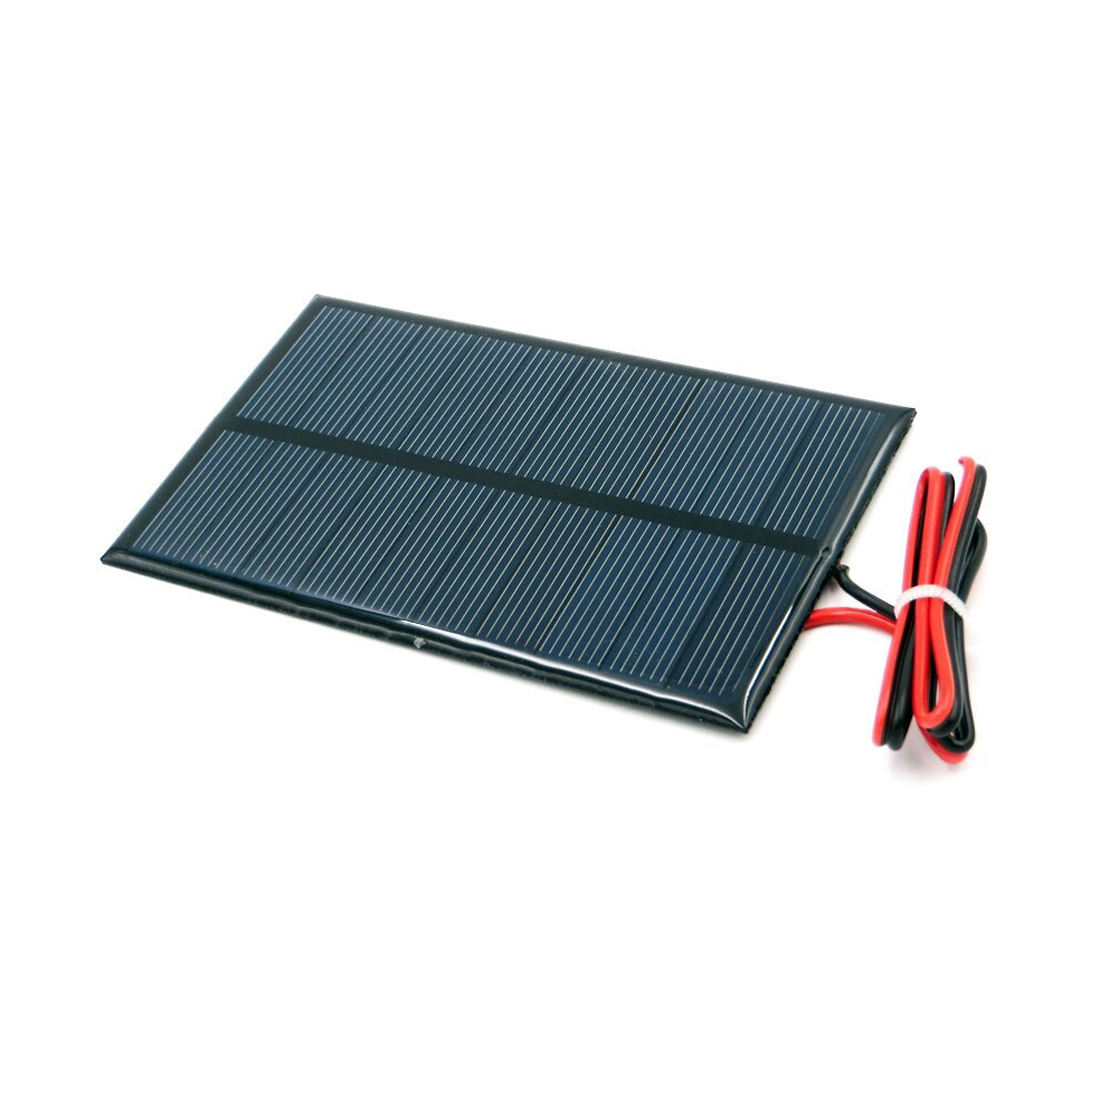 Hobby Small Solar Panel 5v 250mA